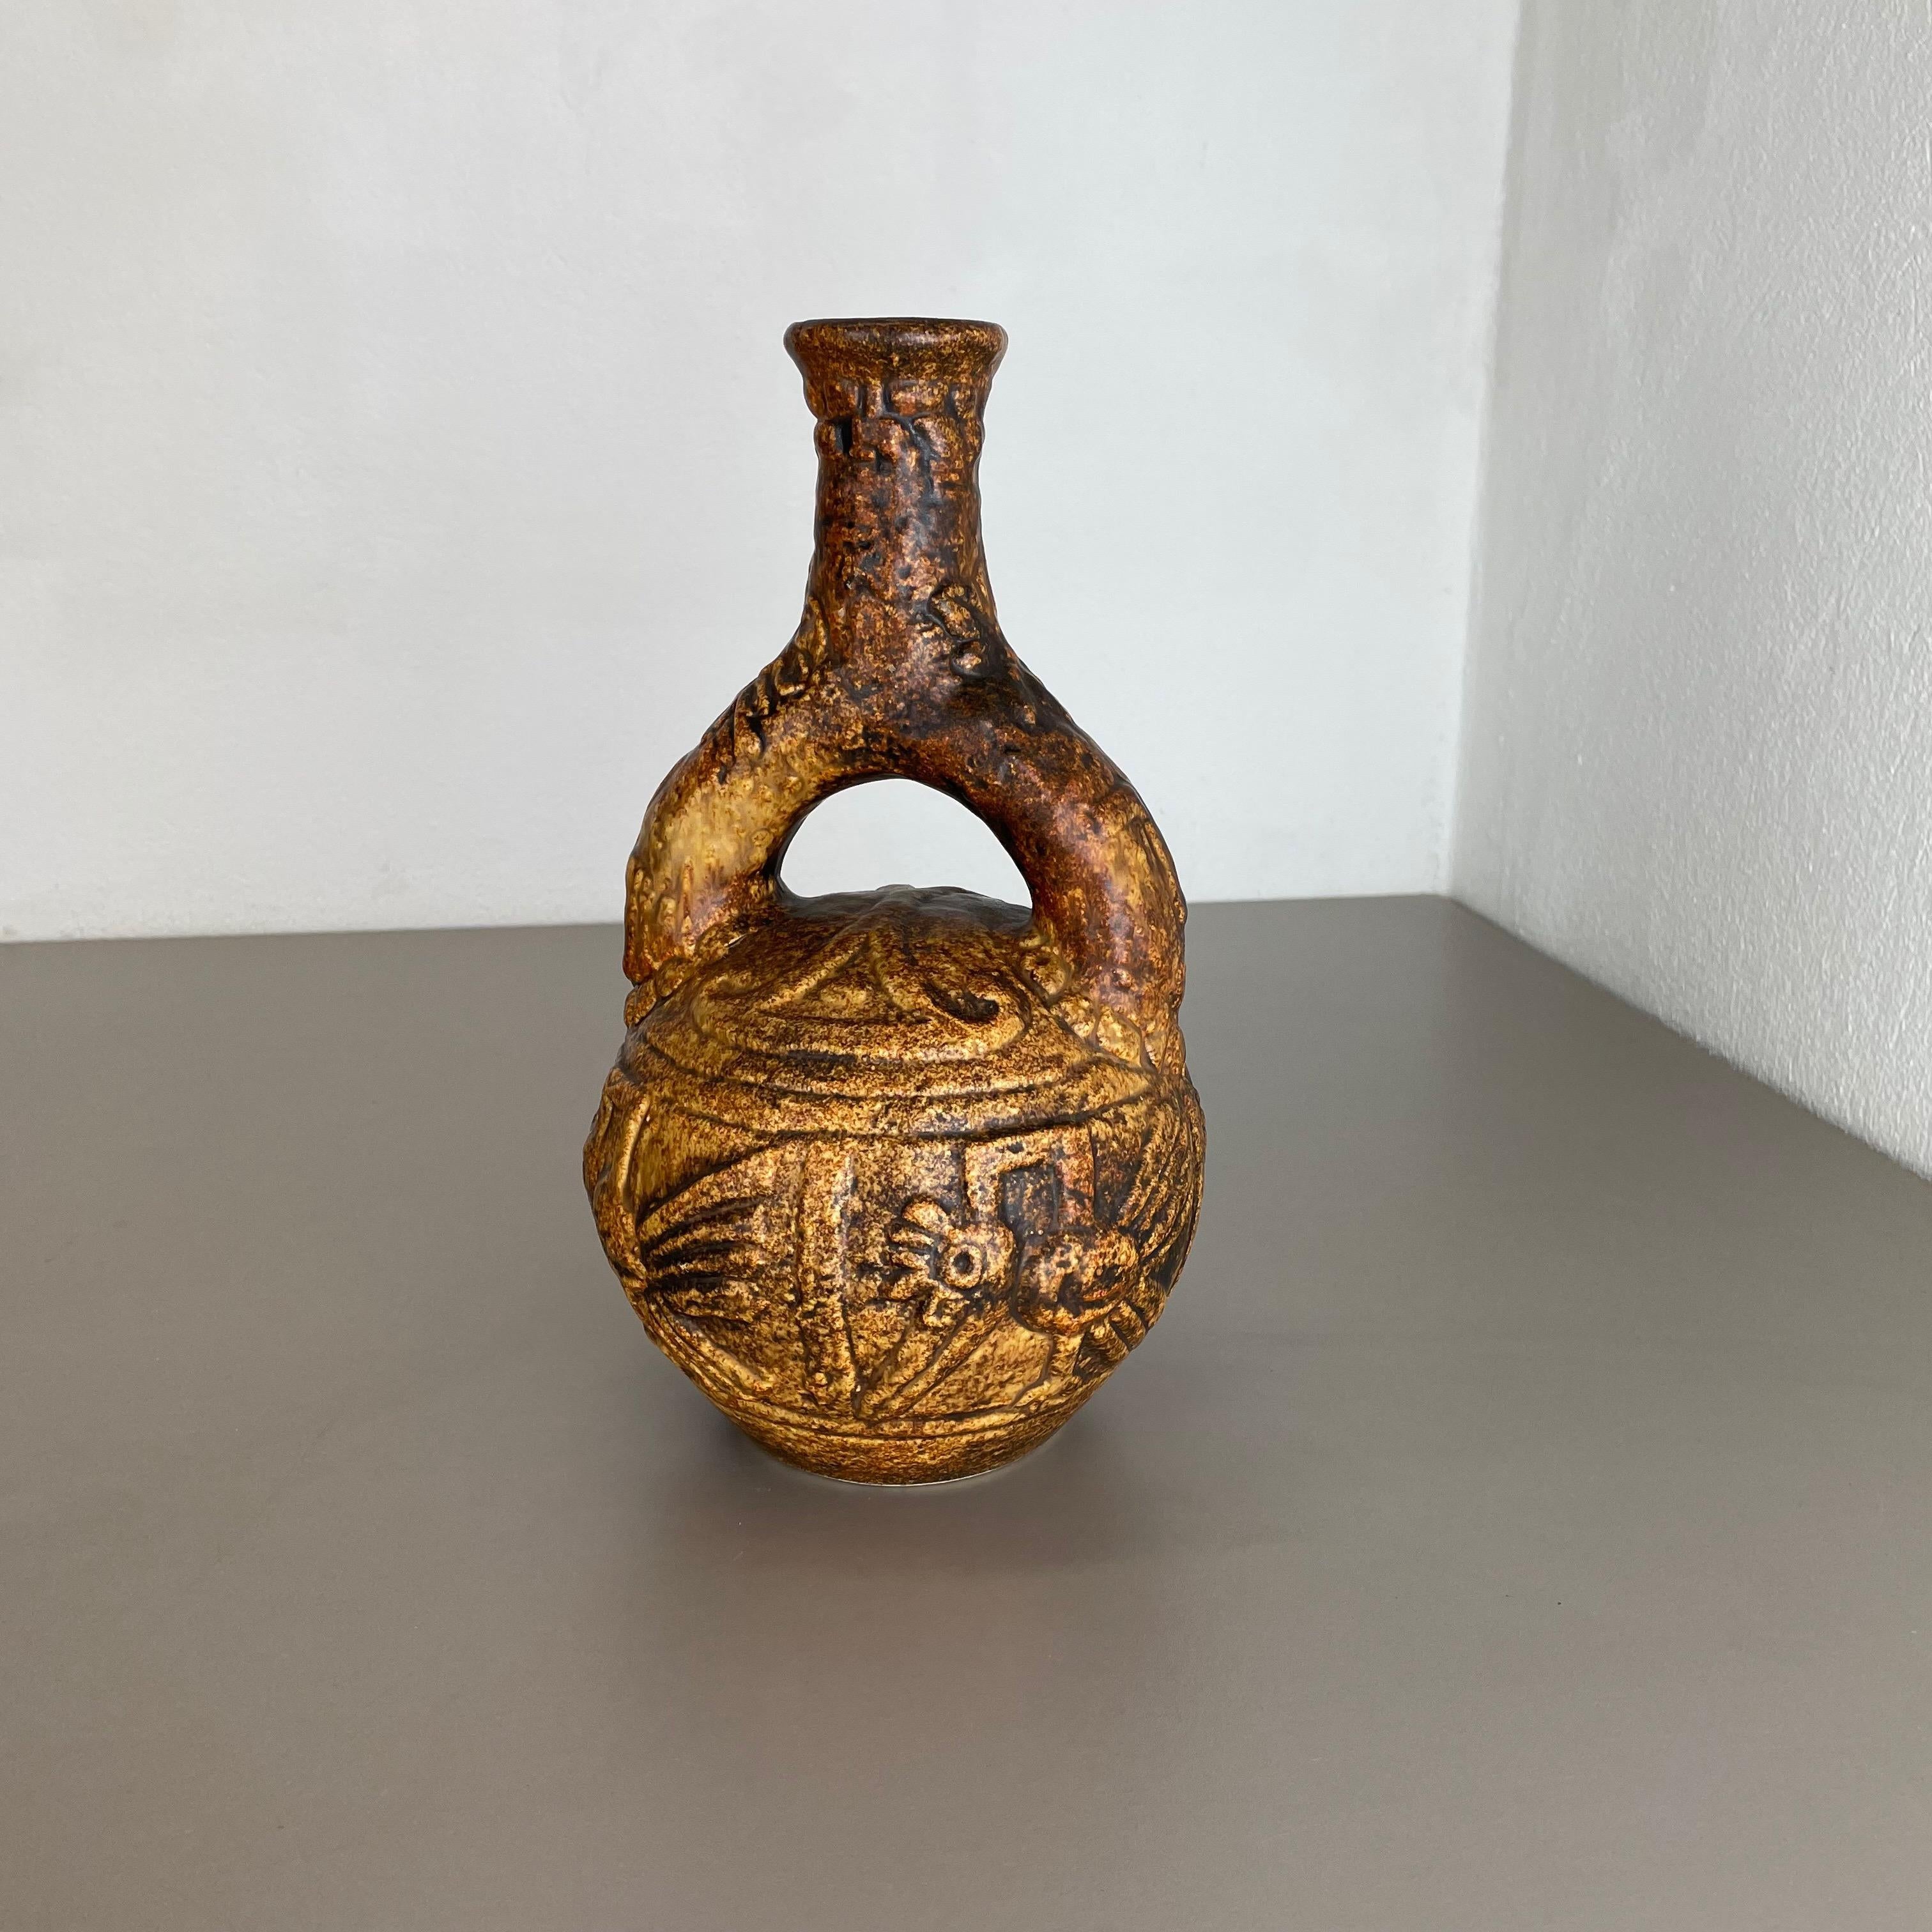 Artikel:

Vase aus Keramik


Produzent:

JASBA Ceramic, Deutschland



Jahrzehnt:

1970s




Original Vintage Keramikvase aus den 1970er Jahren, hergestellt in Deutschland. Hochwertige deutsche Produktion mit schöner abstrakter